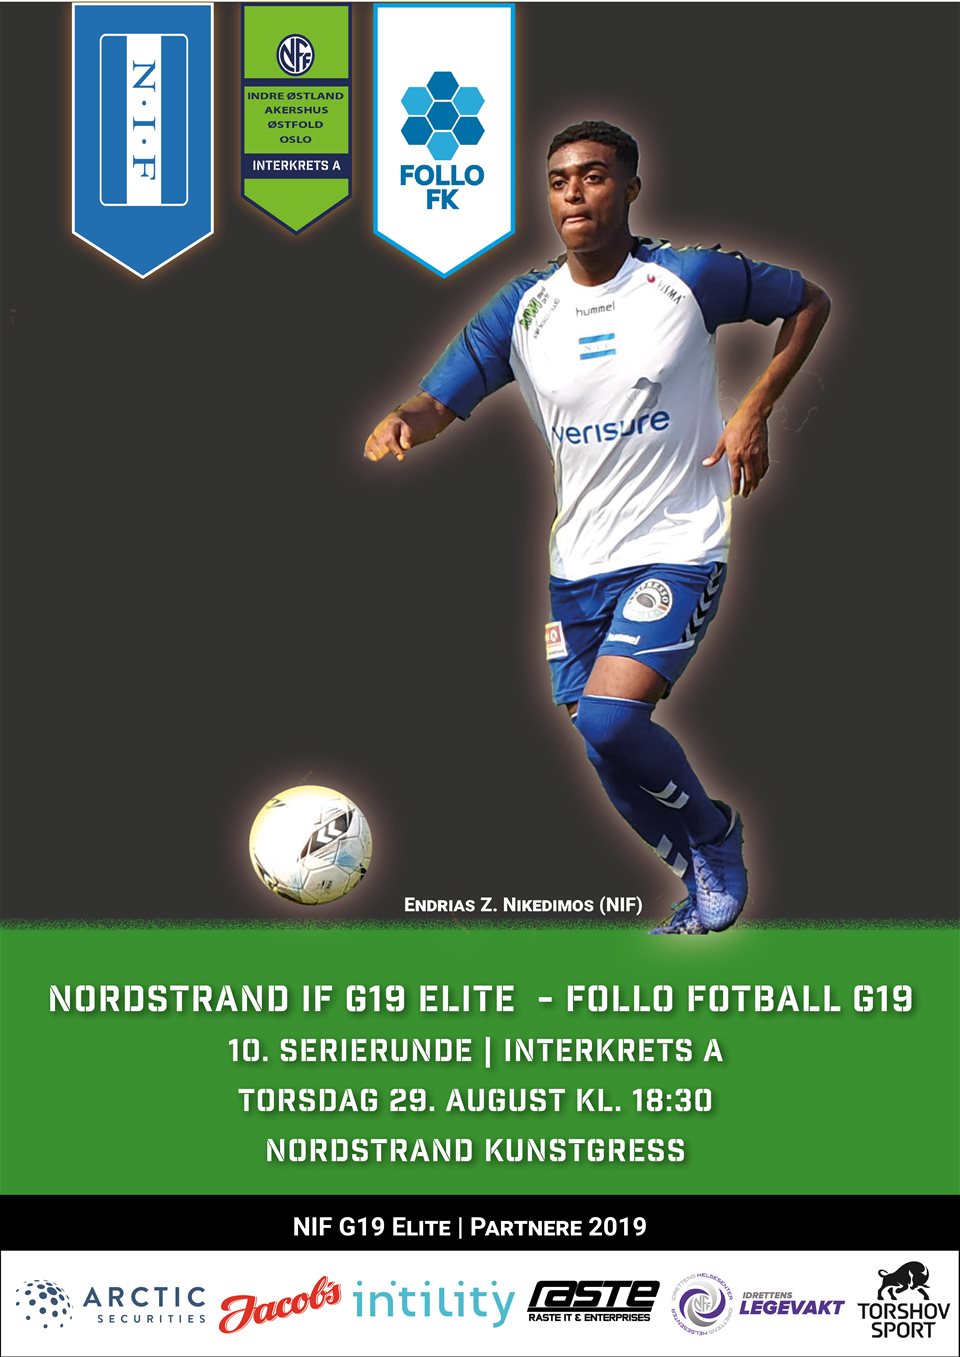 Nordstrand IF G19 Elite møter i dag Follo Fotball G19 på Niffen!